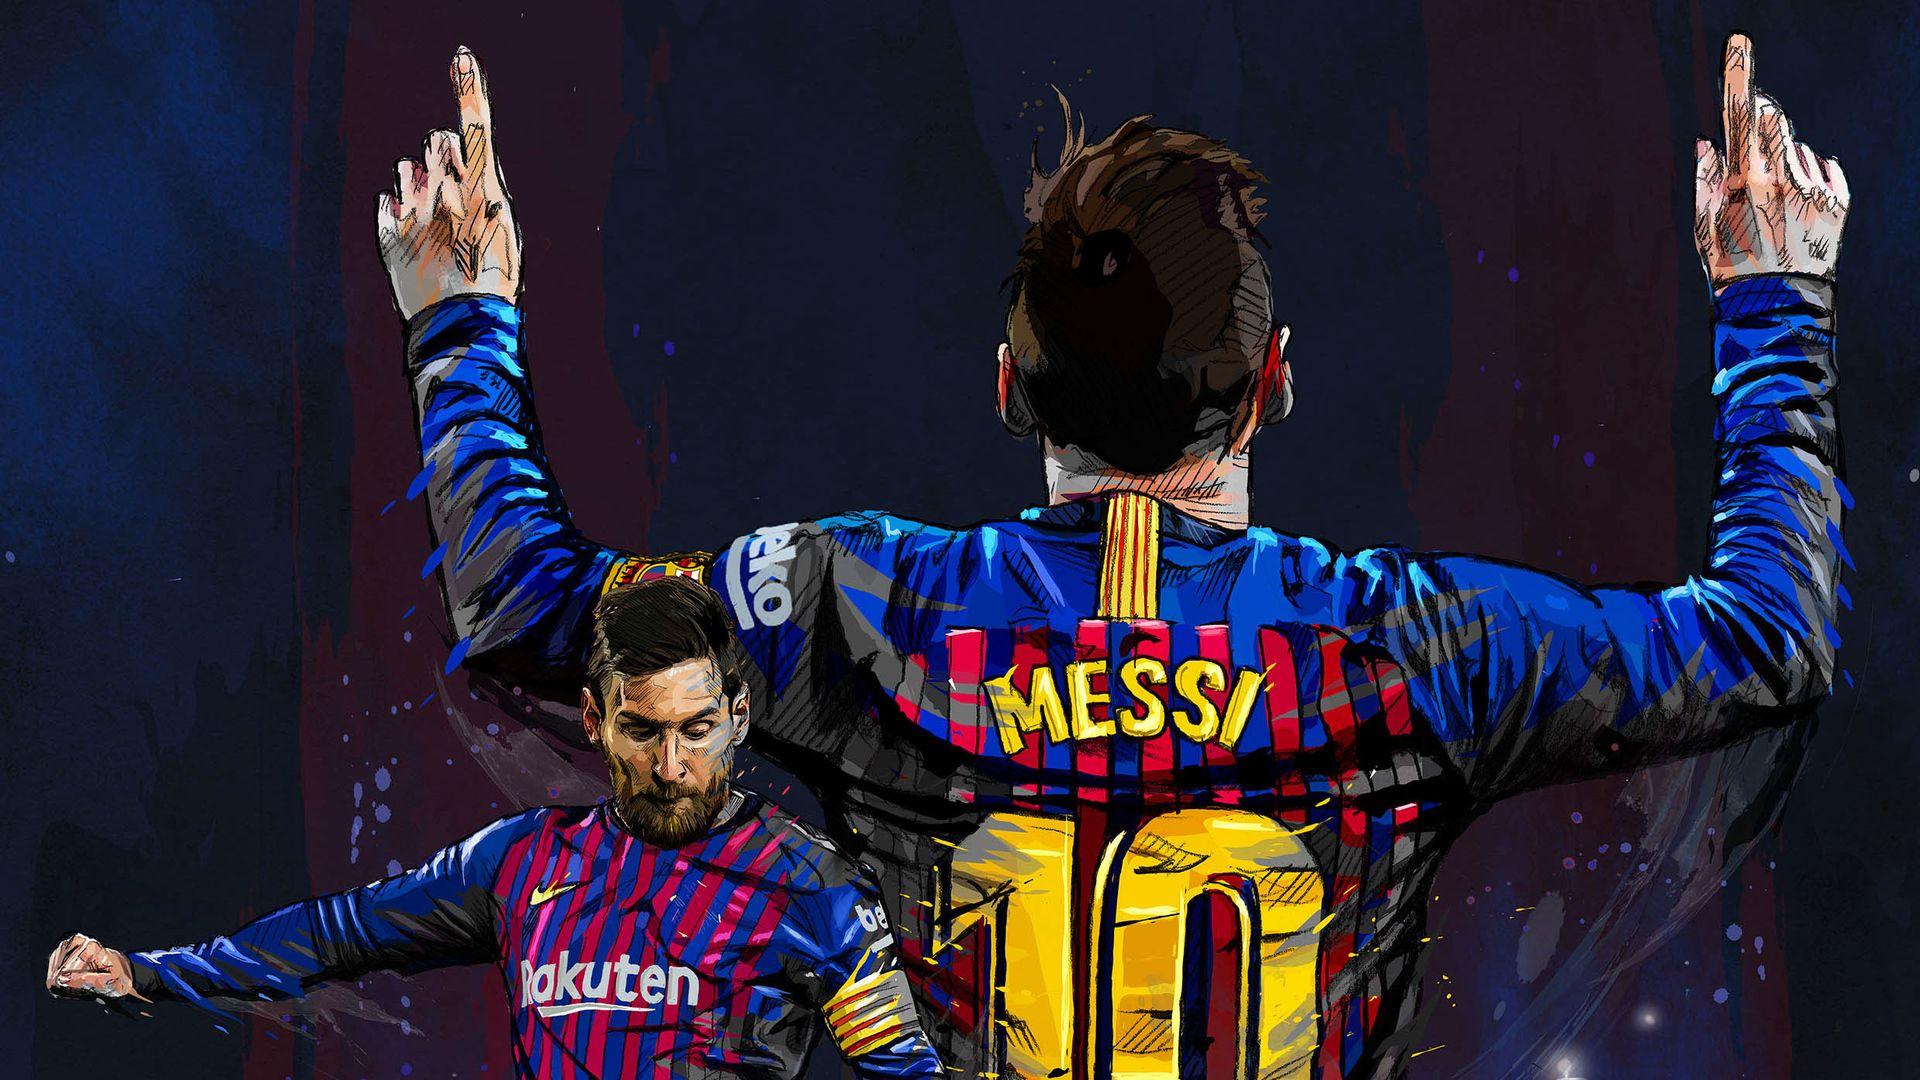 Hãy chào đón hình nền Messi đầy sức sống và năng động, giúp cho màn hình của bạn trở nên đẹp hơn thế. Với hình ảnh cầu thủ vĩ đại này, bạn lại có thể nuôi dưỡng niềm đam mê với bóng đá một cách tuyệt vời.